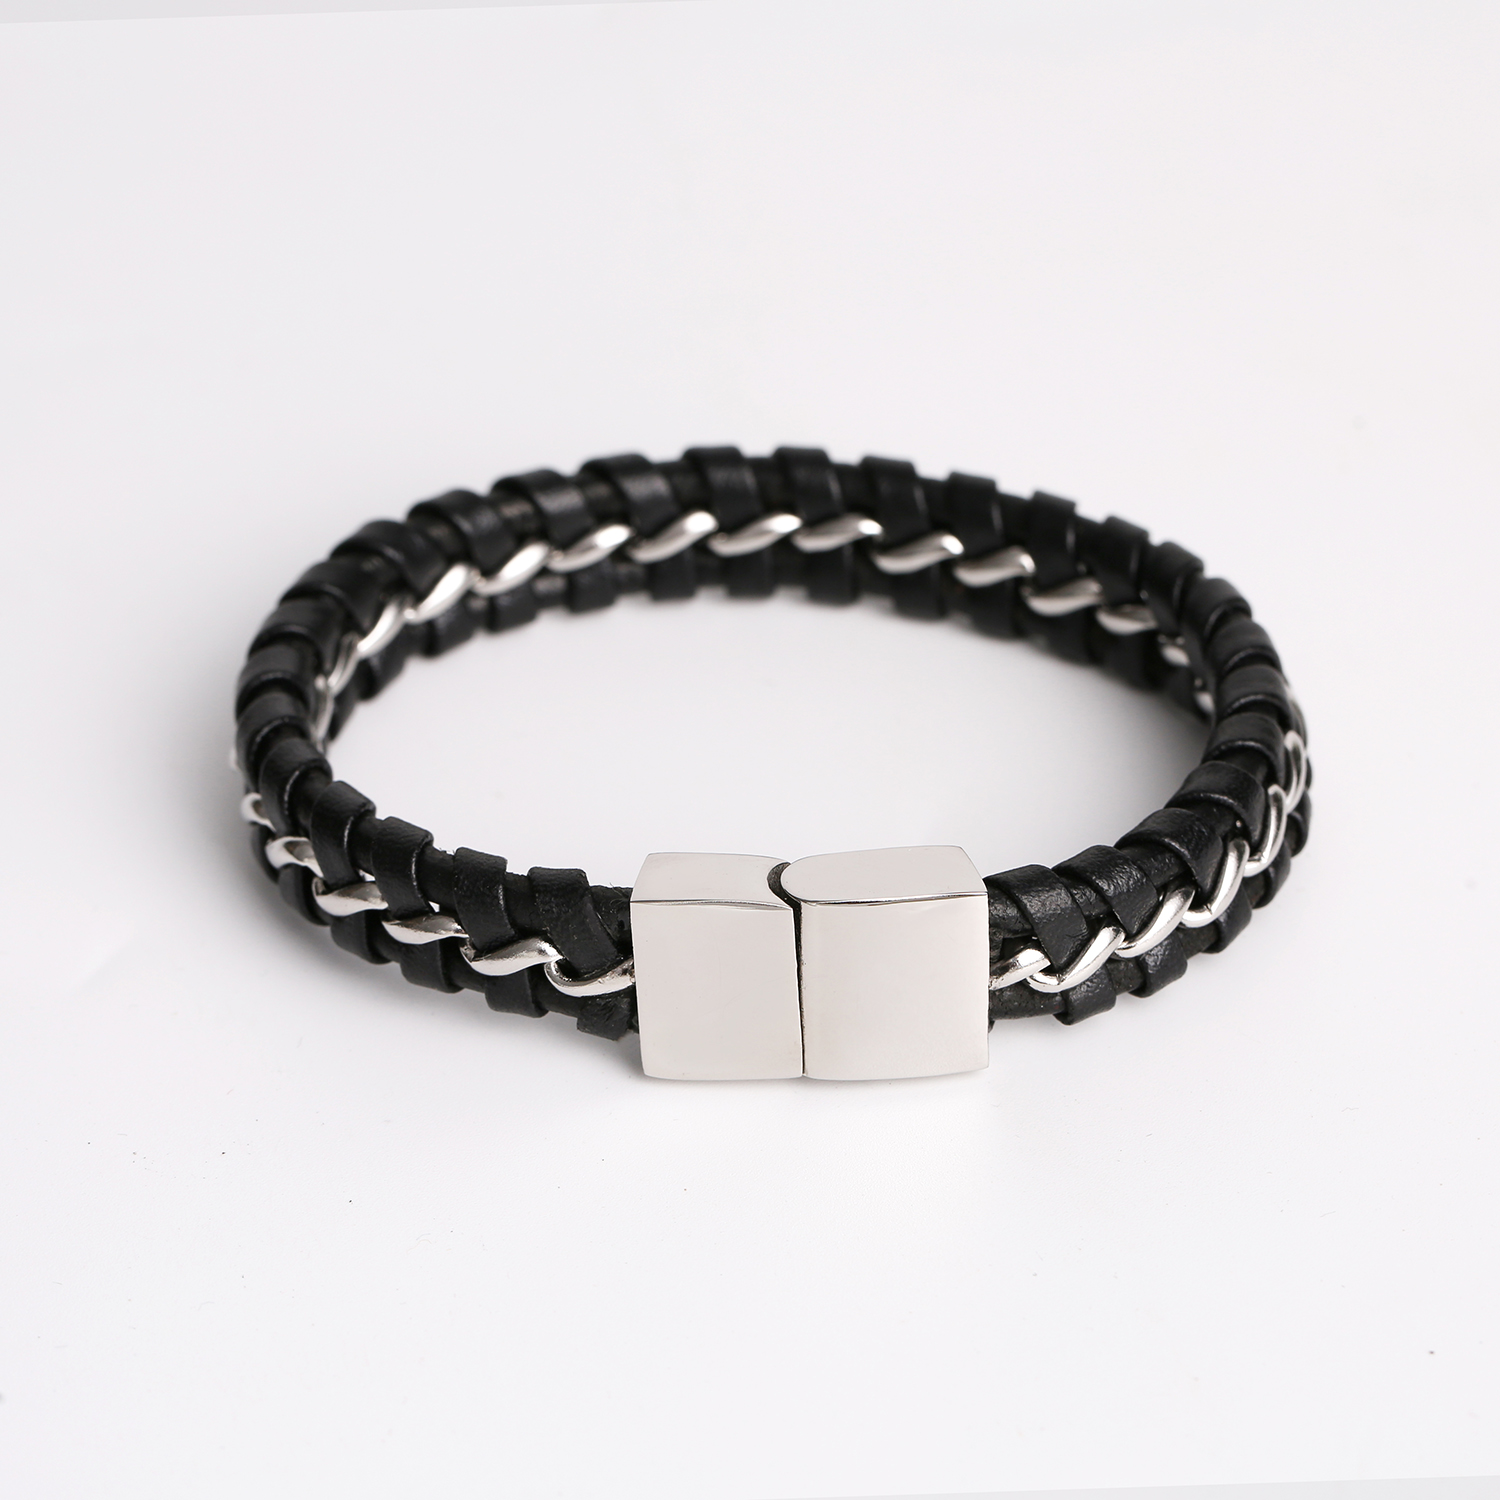 Popolare braccialetto personalizzato con chiusura magnetica in acciaio inossidabile intrecciato con catena in pelle